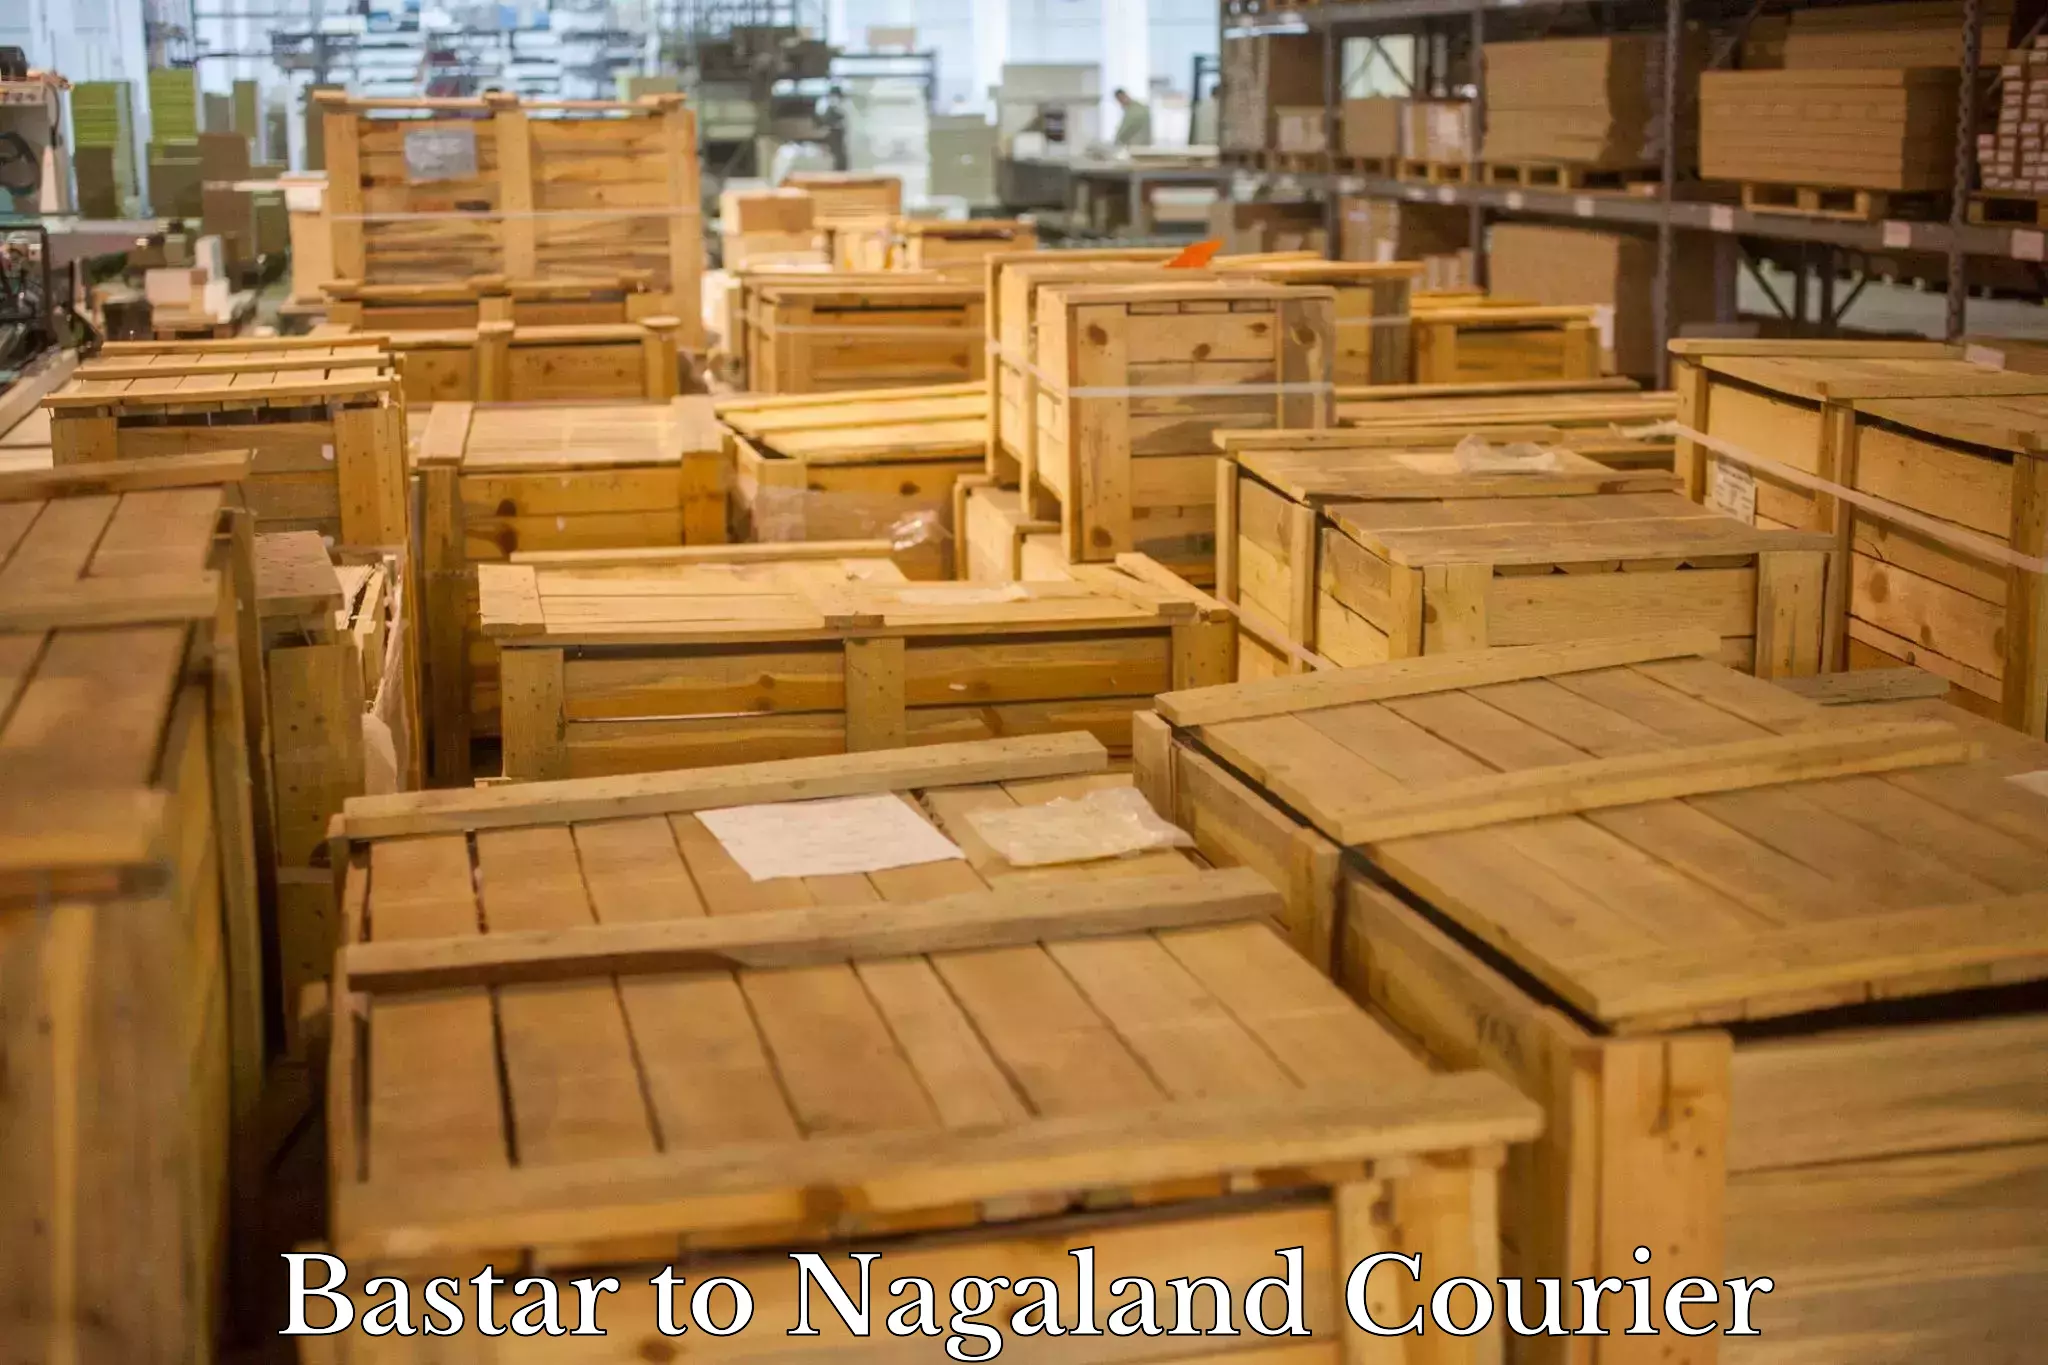 Customer-centric shipping Bastar to Nagaland